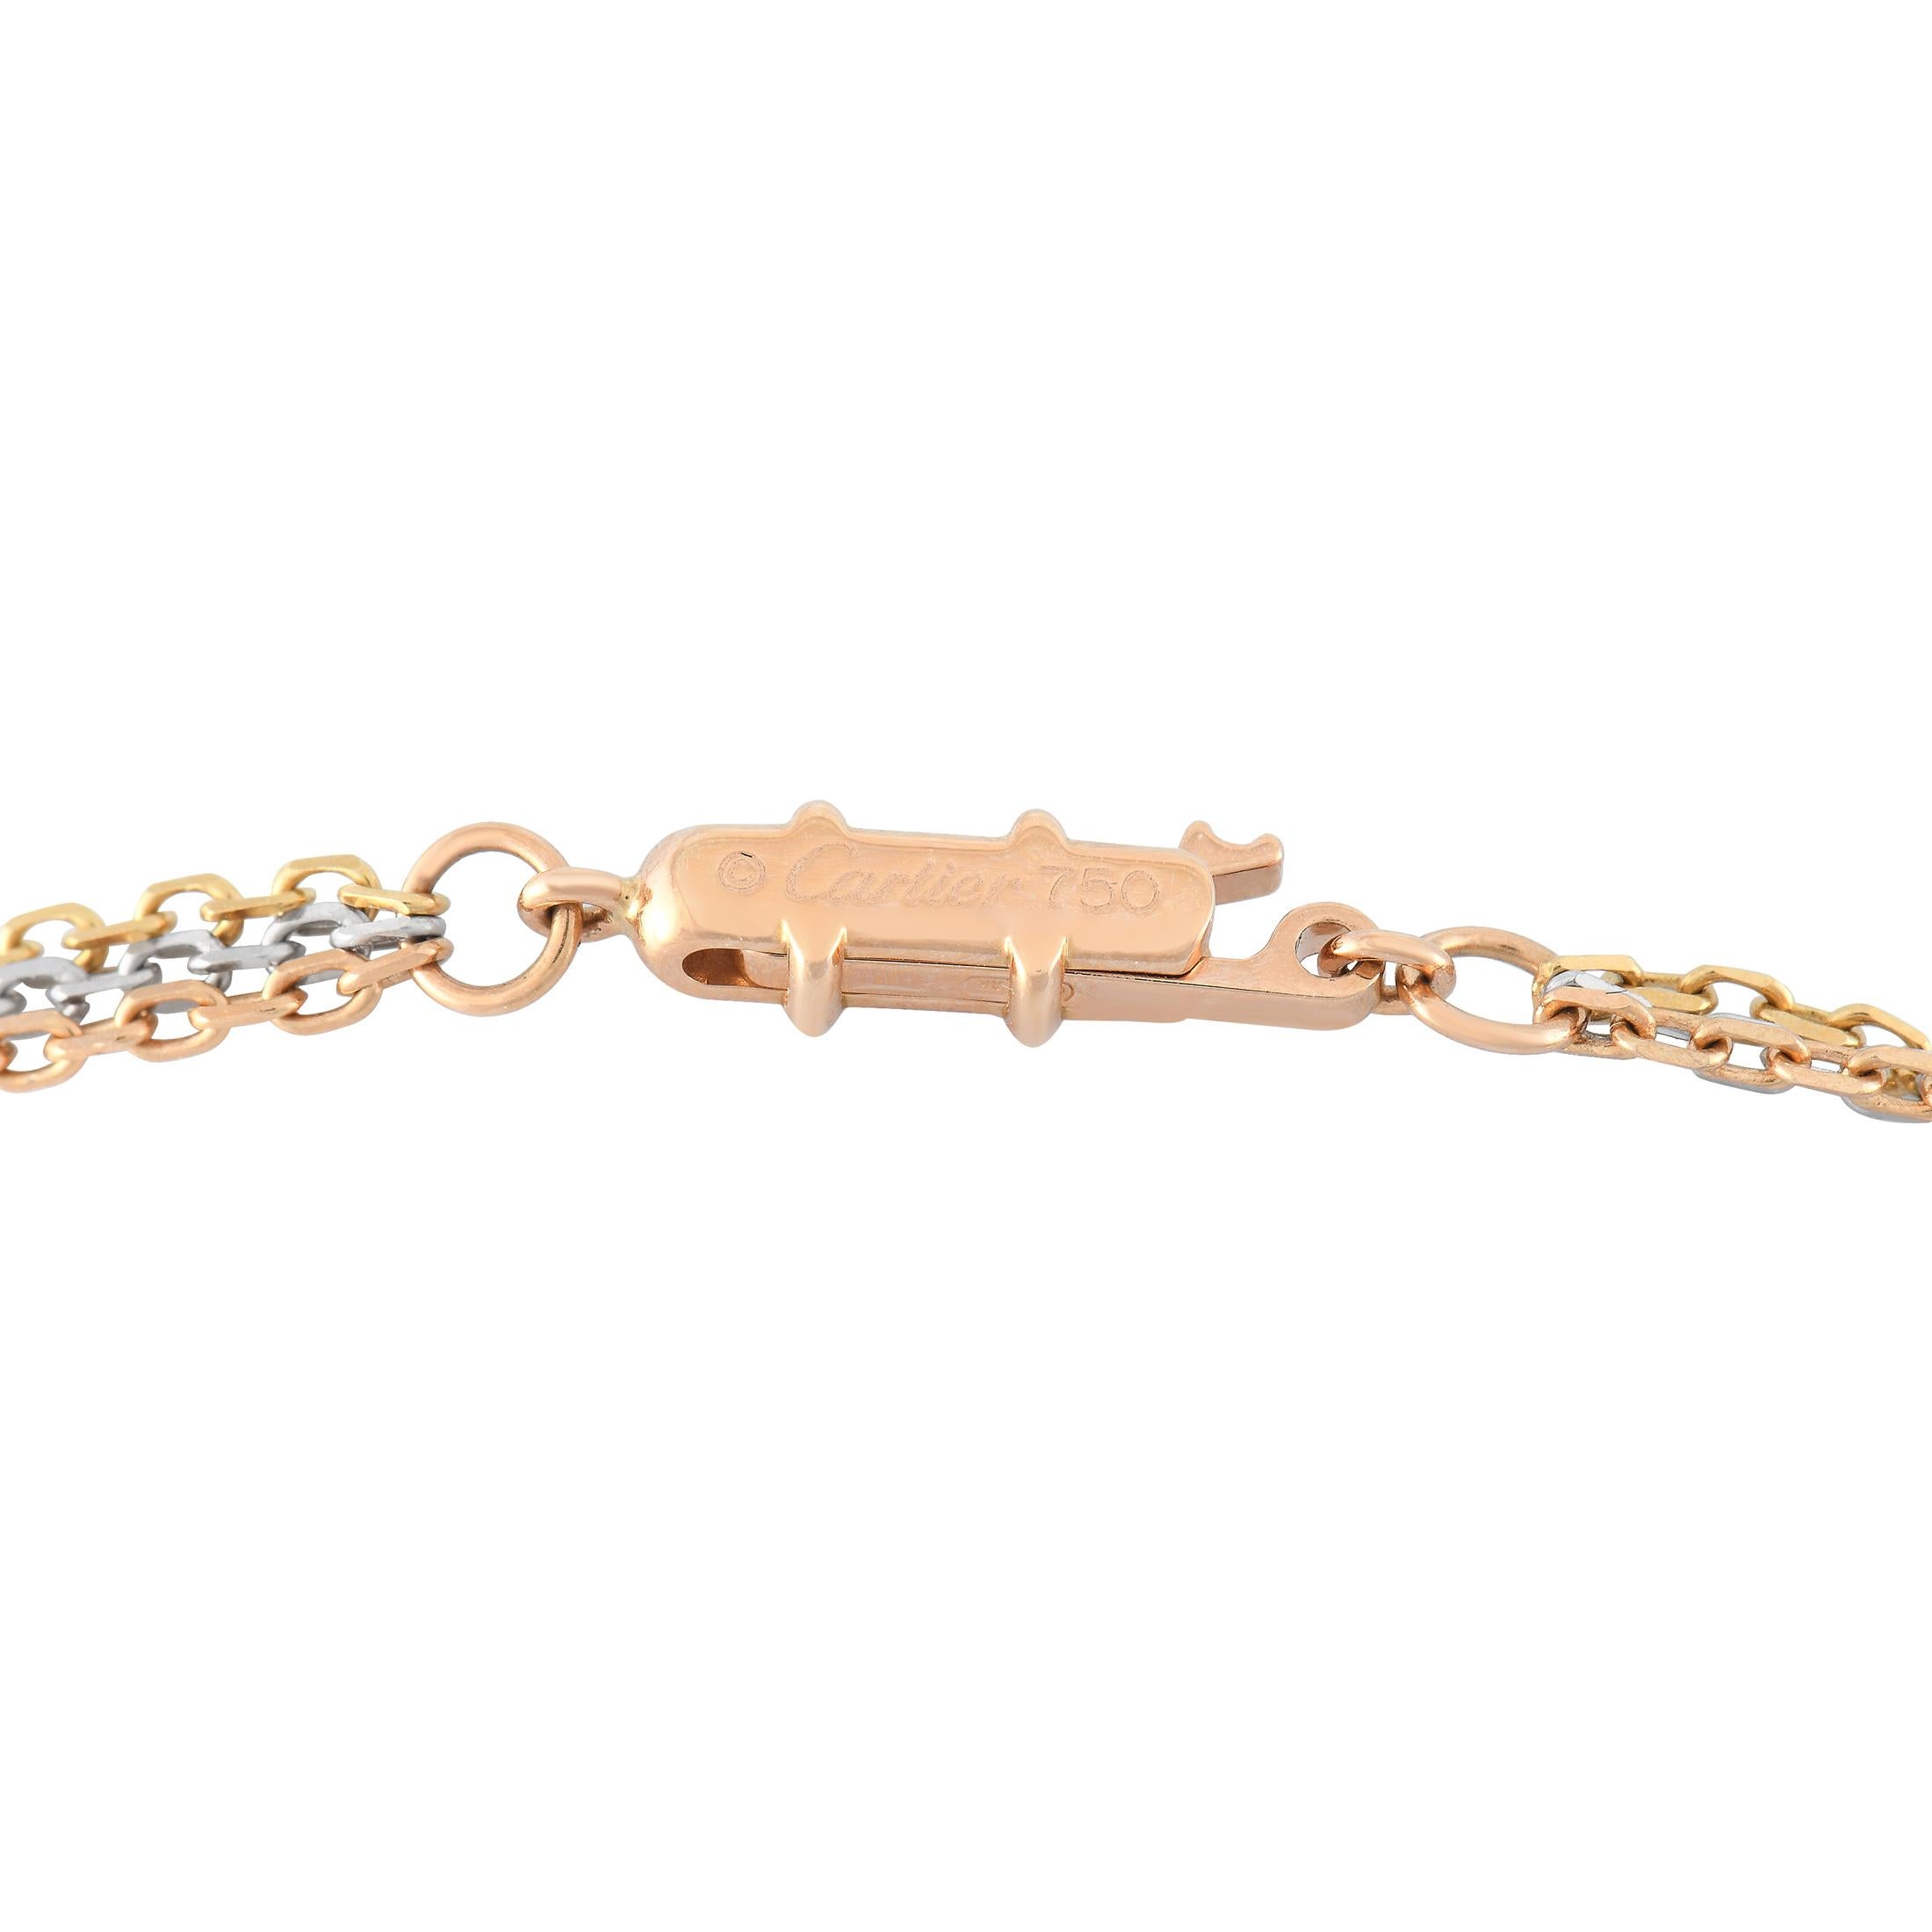 Ce collier Trinity de Cartier est tout simplement magnifique. Suspendu à une chaîne de 22 cm, vous trouverez un pendentif audacieux mesurant 1,75 cm de diamètre. Whiting est fabriqué à partir d'une combinaison d'anneaux en or blanc 18 carats, en or